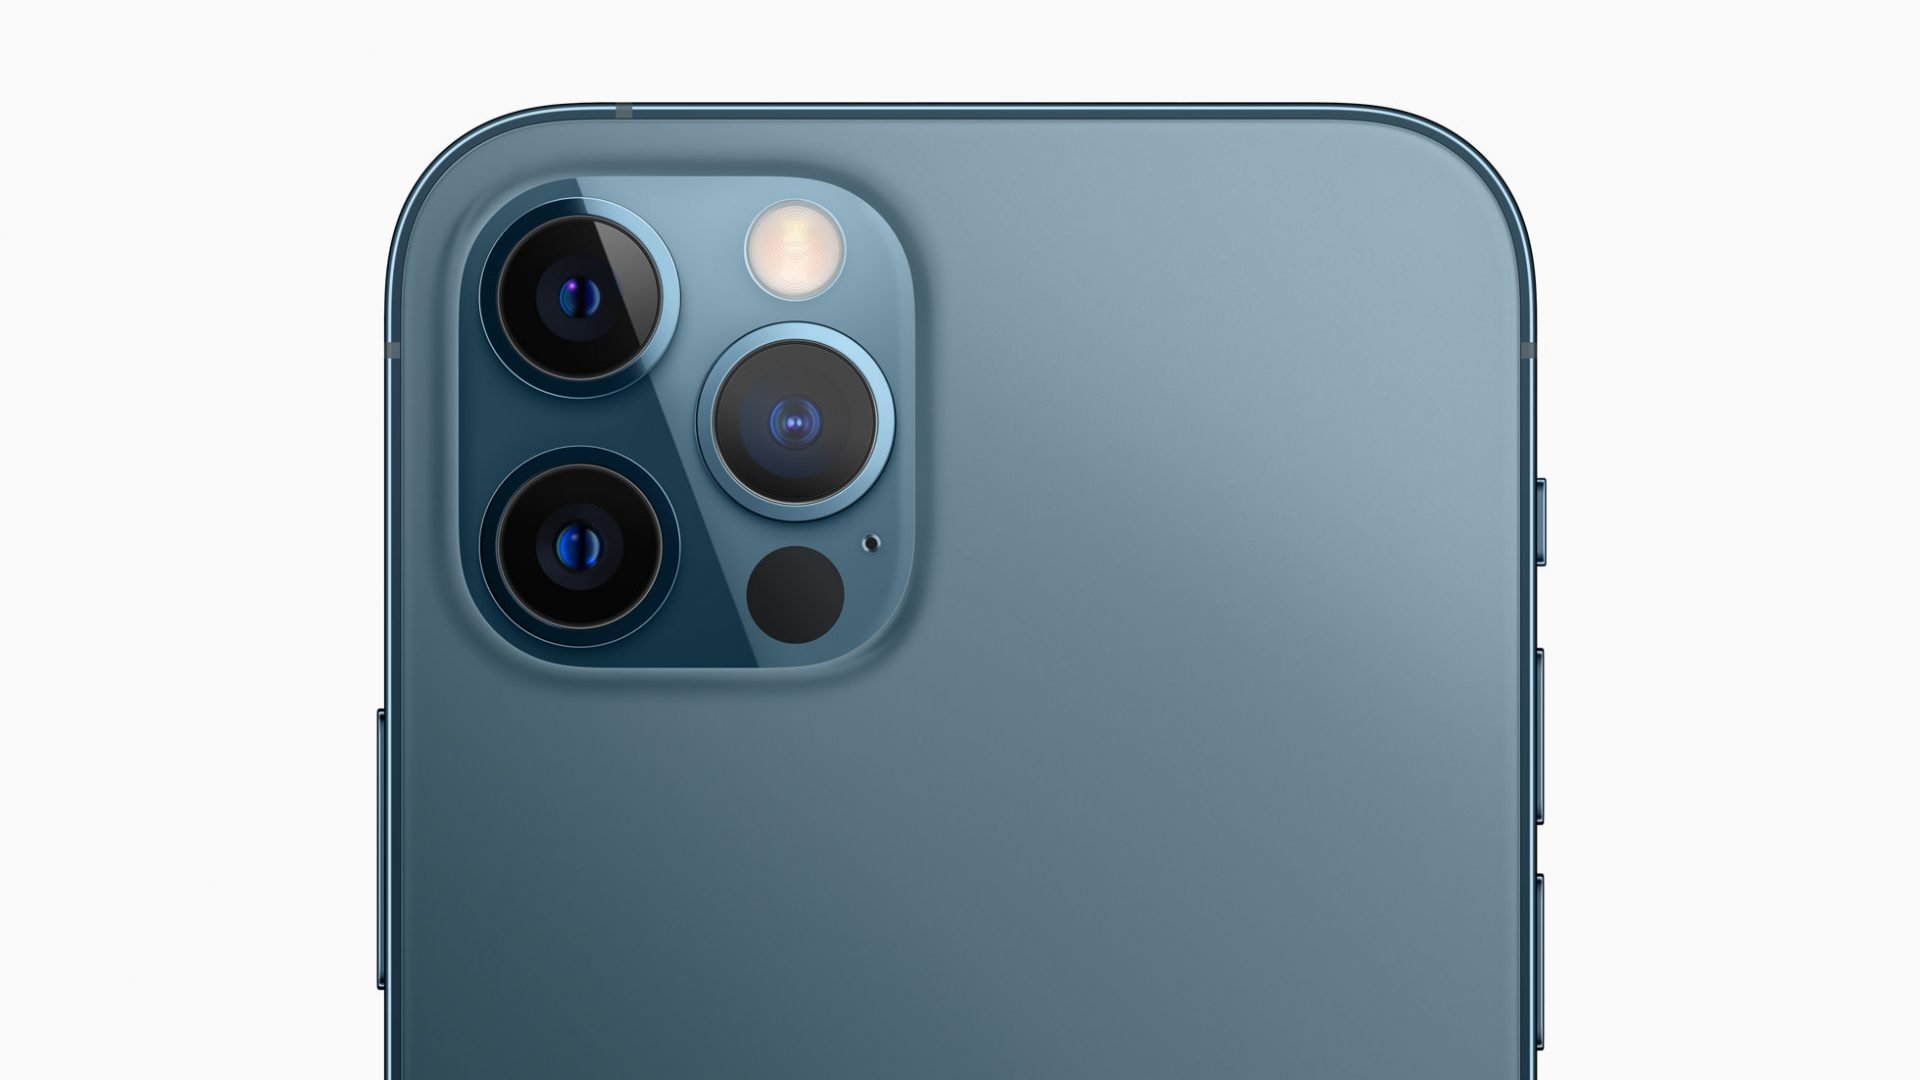 Chi tiết về camera và cảm biến trên iPhone 12 Pro Max